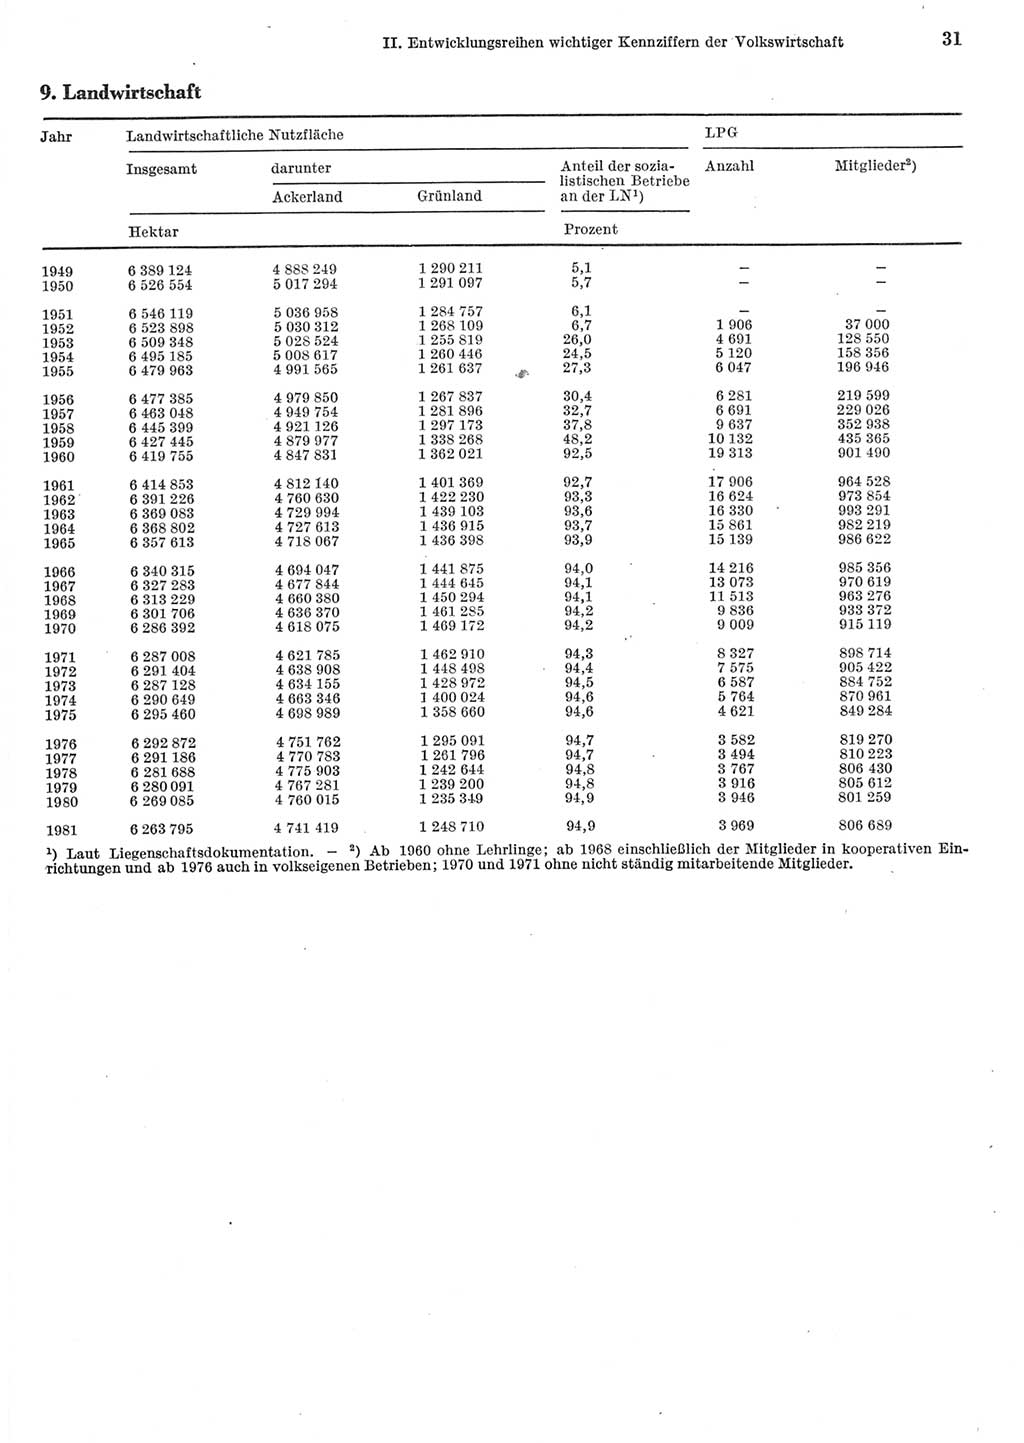 Statistisches Jahrbuch der Deutschen Demokratischen Republik (DDR) 1982, Seite 31 (Stat. Jb. DDR 1982, S. 31)